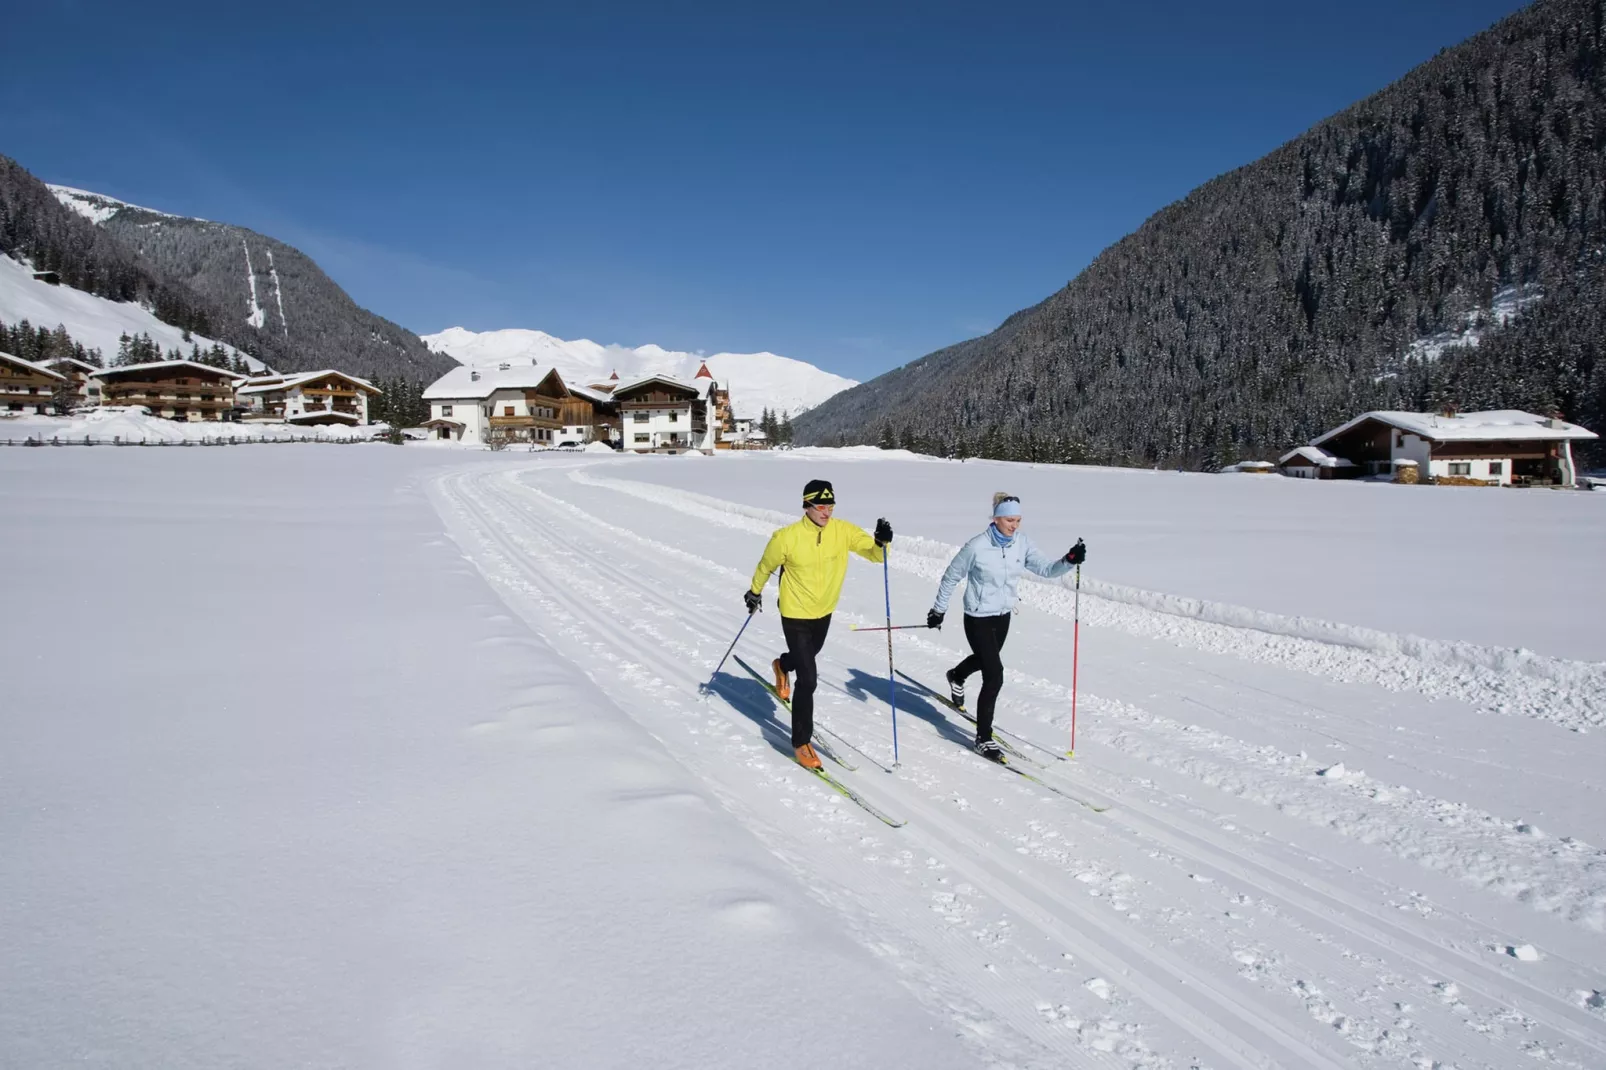 Luxner-Gebied winter 5km